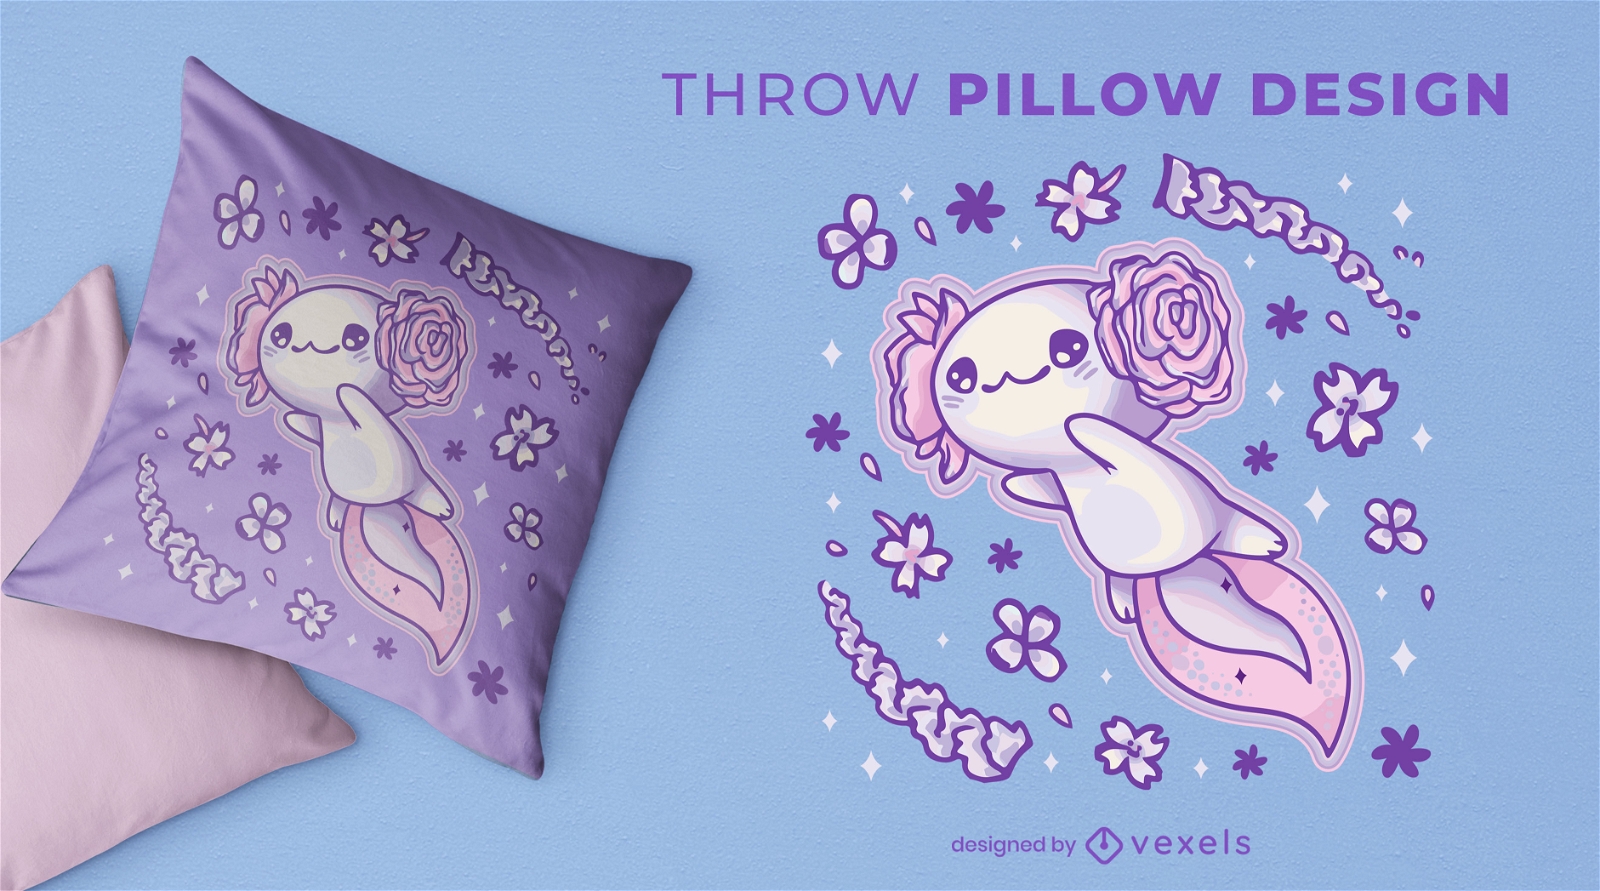 Flying axolotl animal cute throw pillow design